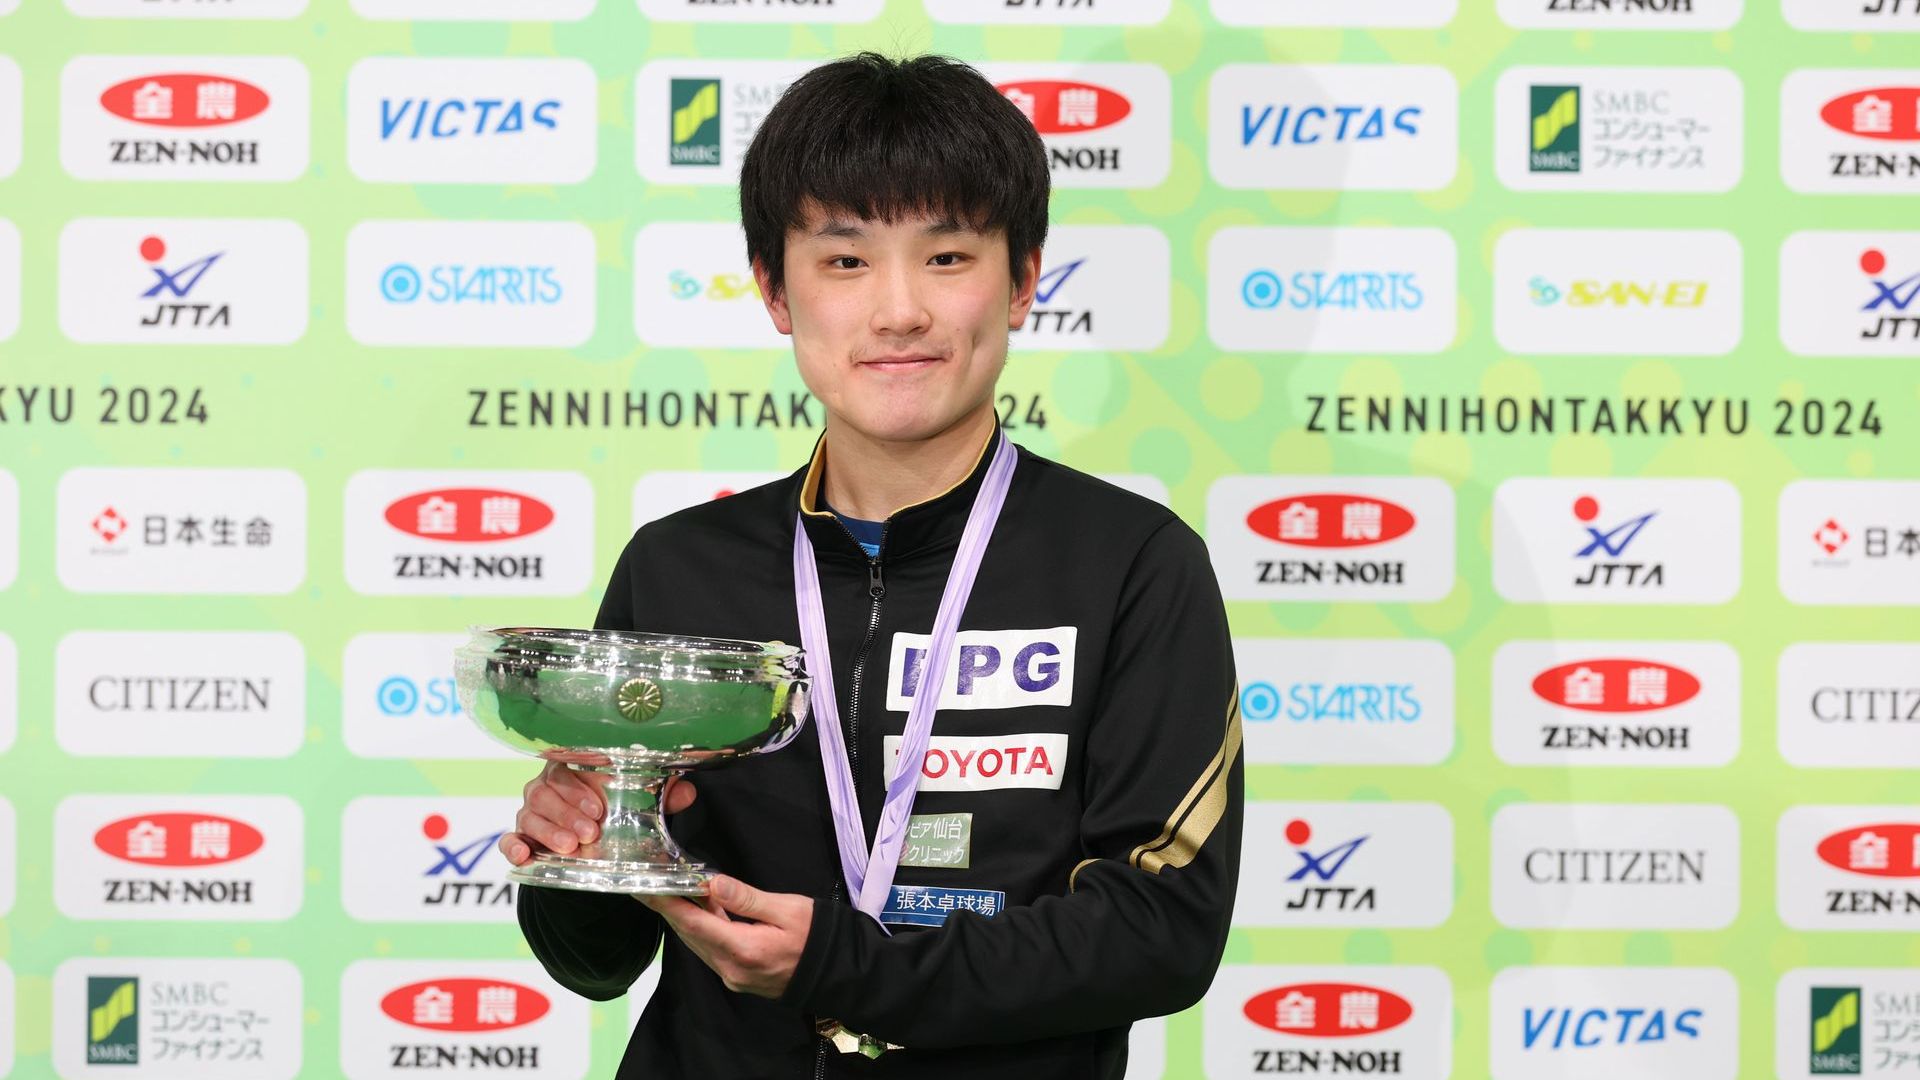 【全日本卓球】男子シングルス優勝・張本智和からファンにメッセージ、「オリンピックに向けて突き進みます！」